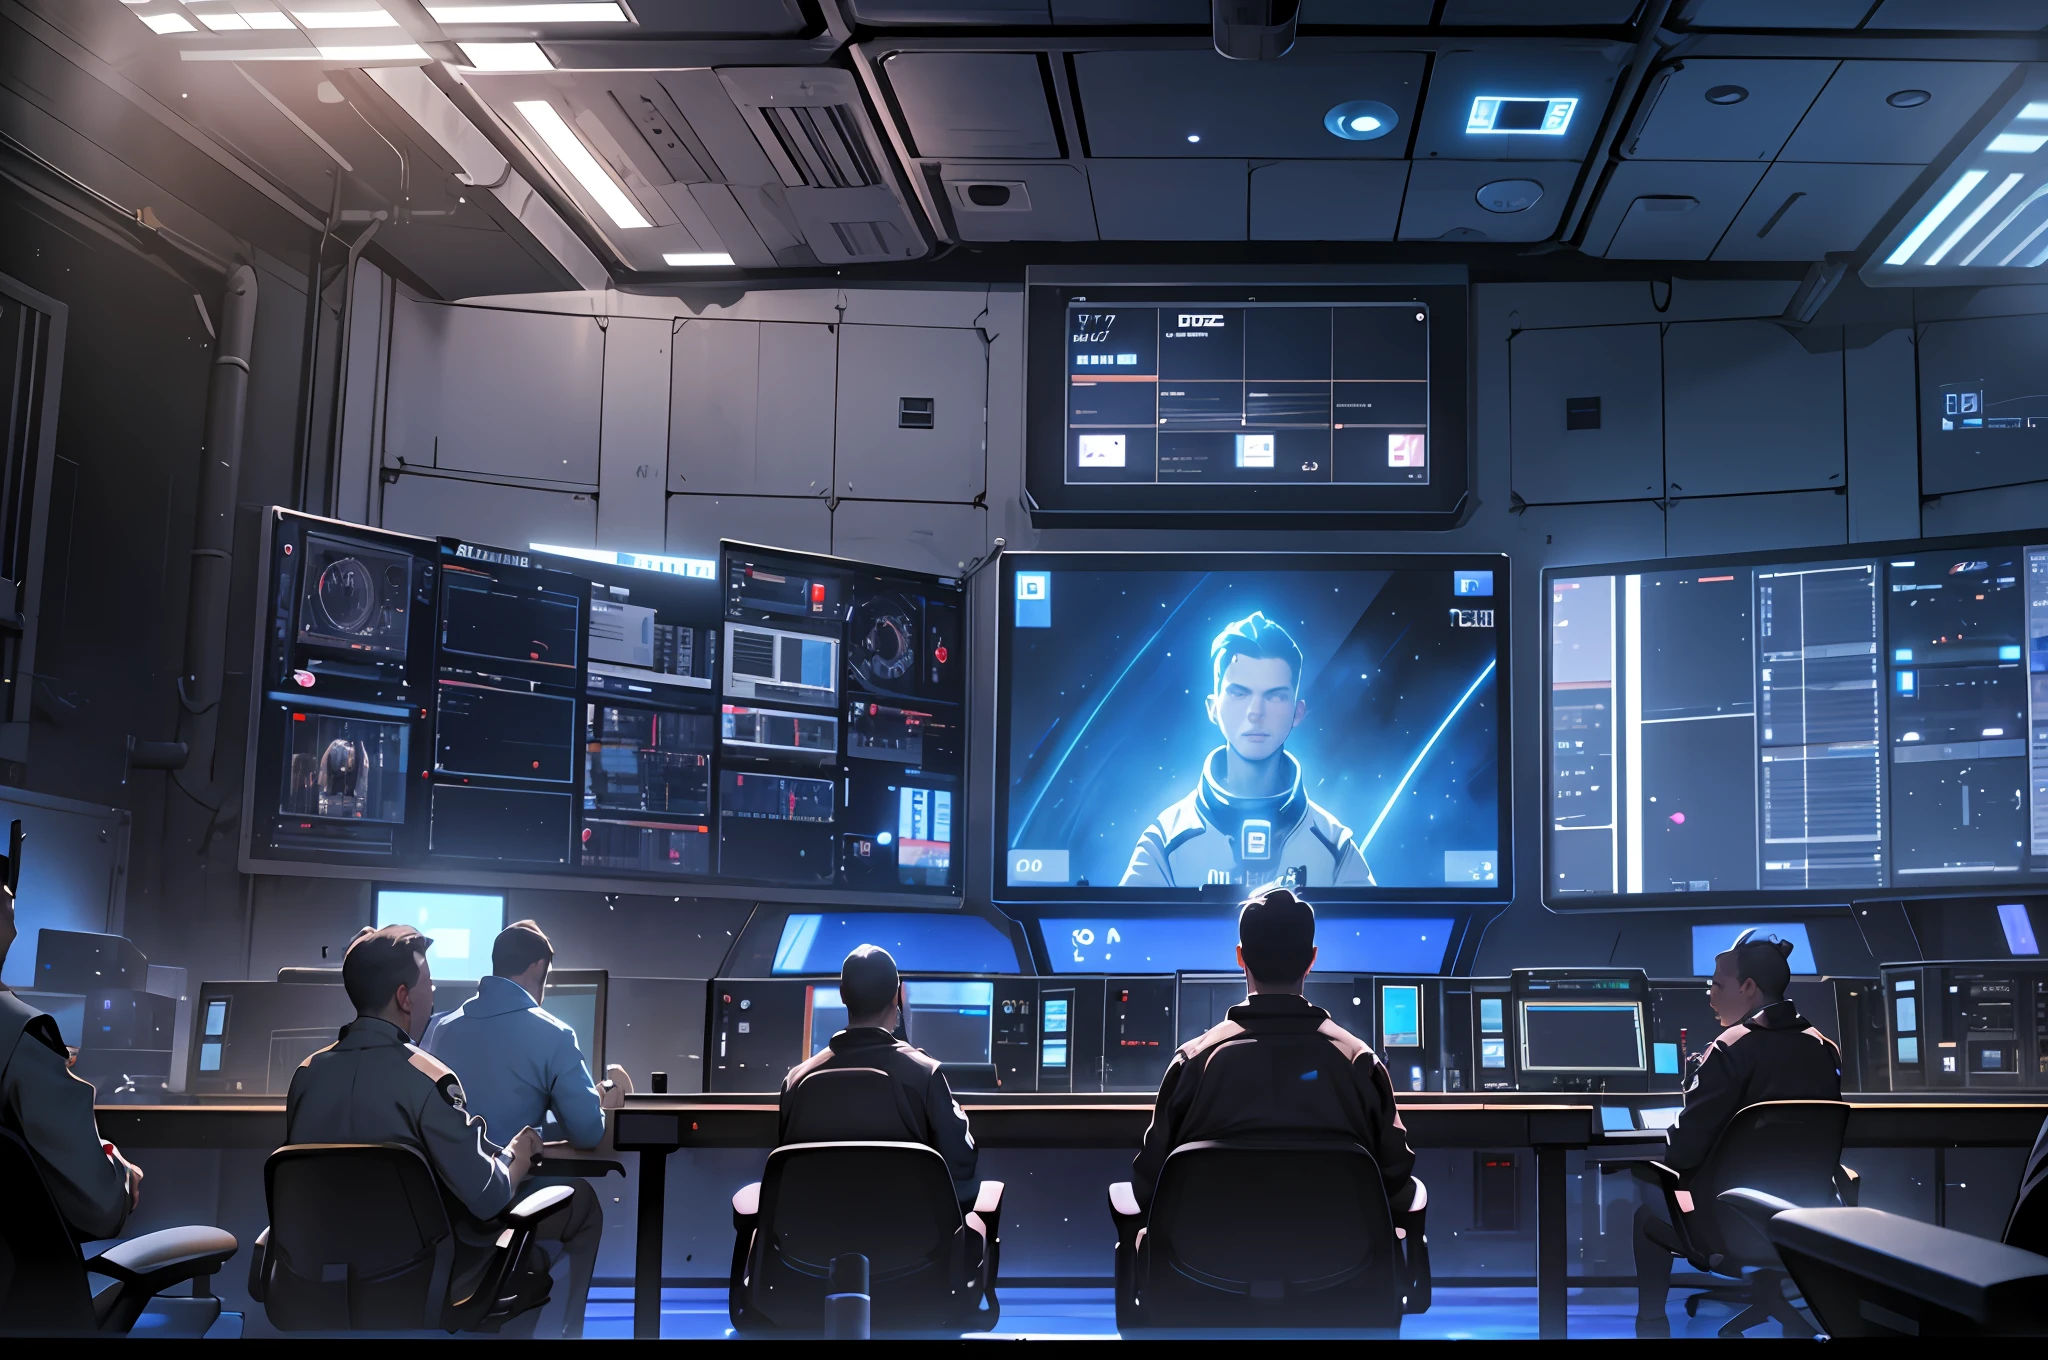 Sala de controle espacial, sala de controle, muitas telas, telas com luz azul, muita tripulação, todo mundo aplaude, Realismo, Alto detalhe, iluminação cinematográfica, iluminação legal, fechar-se, Realismo, Ultra HD, Alto detalhe, super detalhe --auto --s2